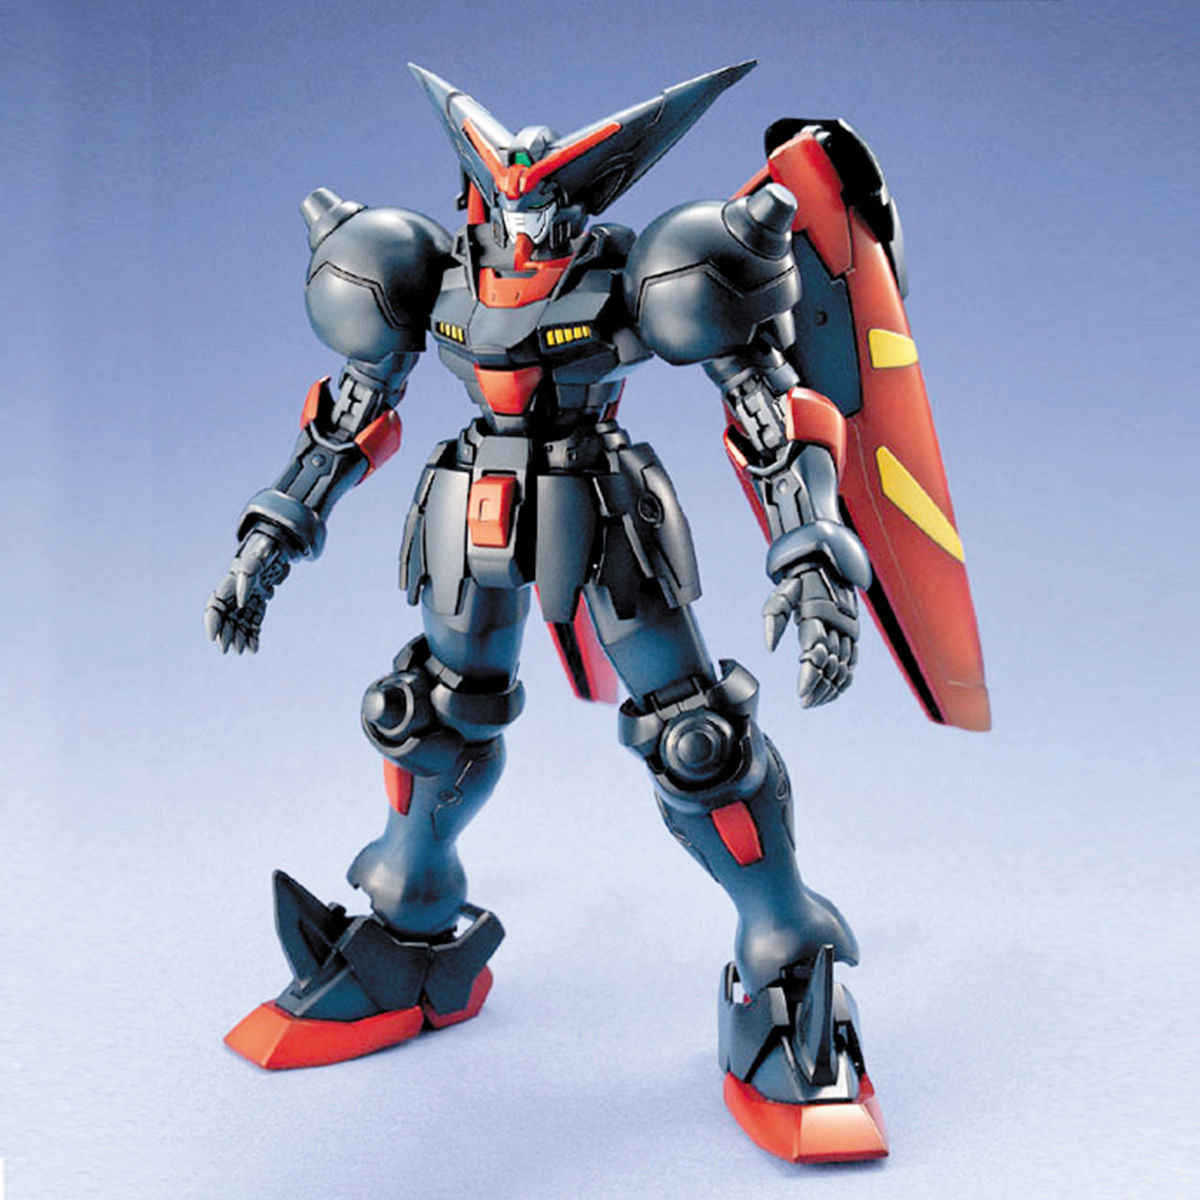 Bandai 1/100 MG Master Gundam Plastic Model Kit